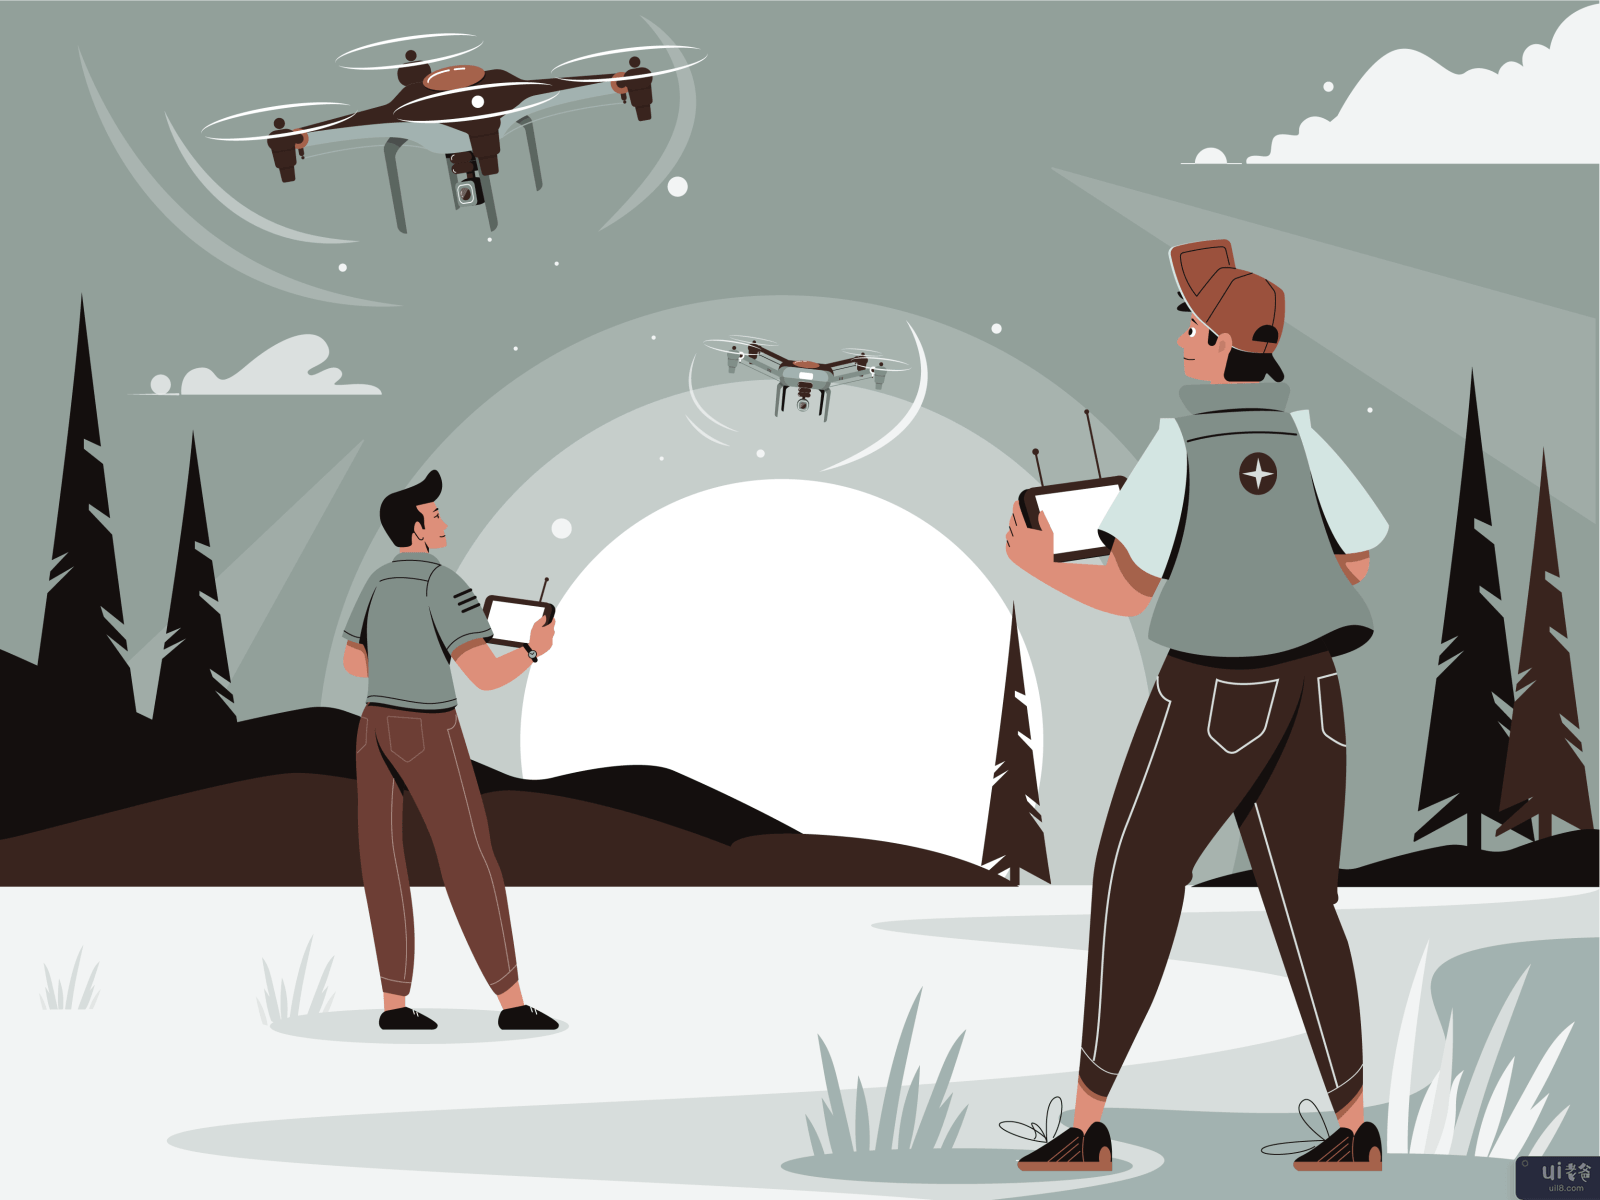 无人机插图2.0(Drone Illustration 2.0)插图